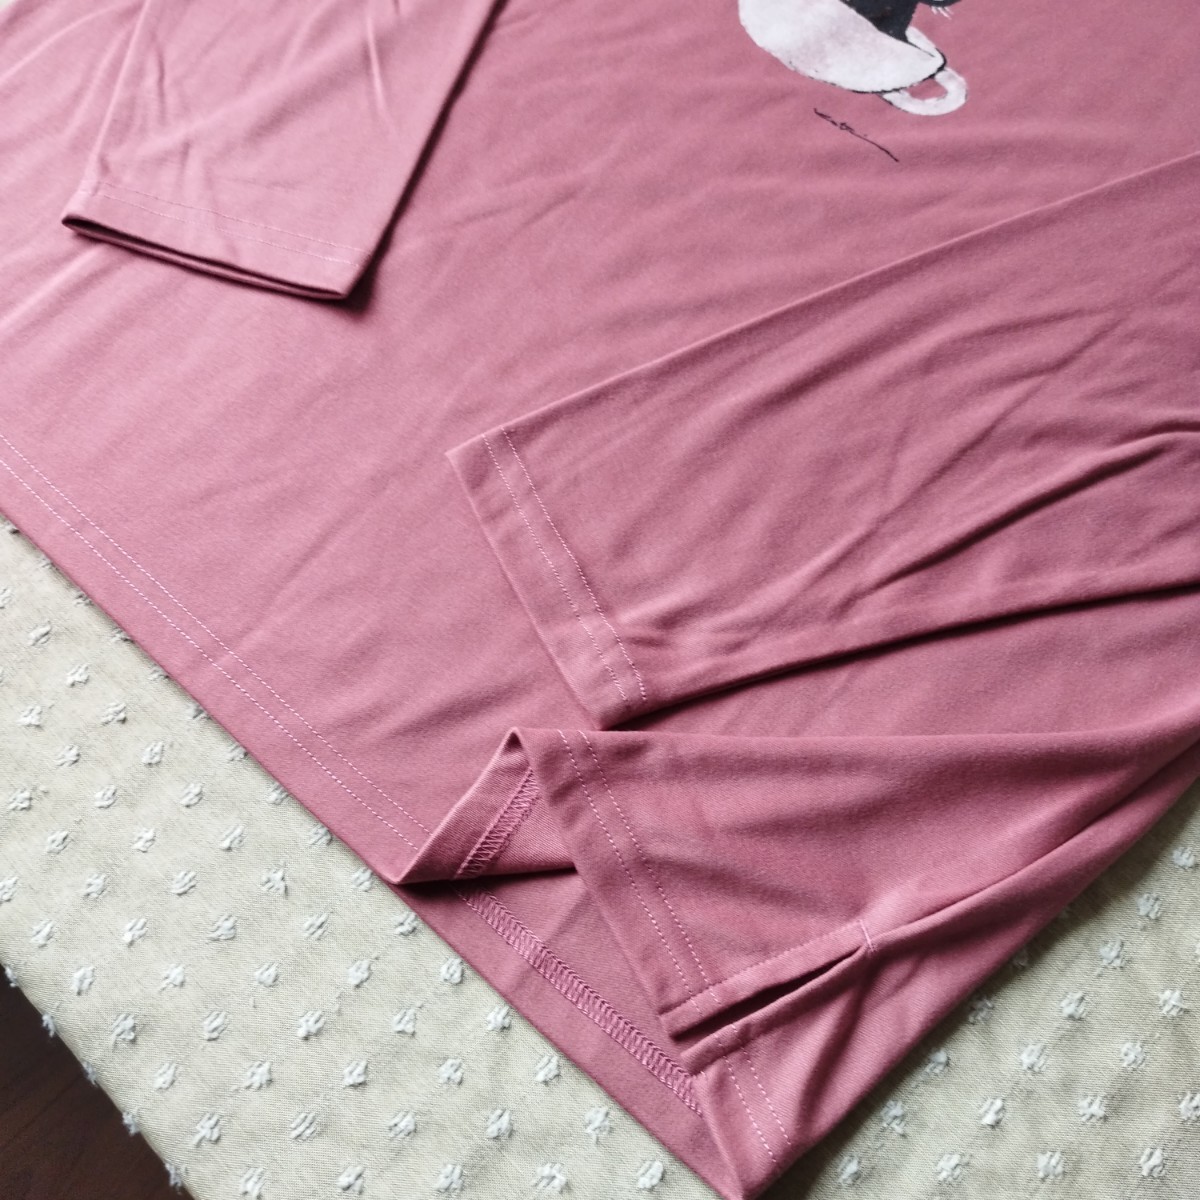 未使用 タグ付 クロネコ pink カットソー Tシャツ チュニック 長袖 ゆったりシルエット L 洗濯機洗い 香月和夫●ネコポス 送料無料